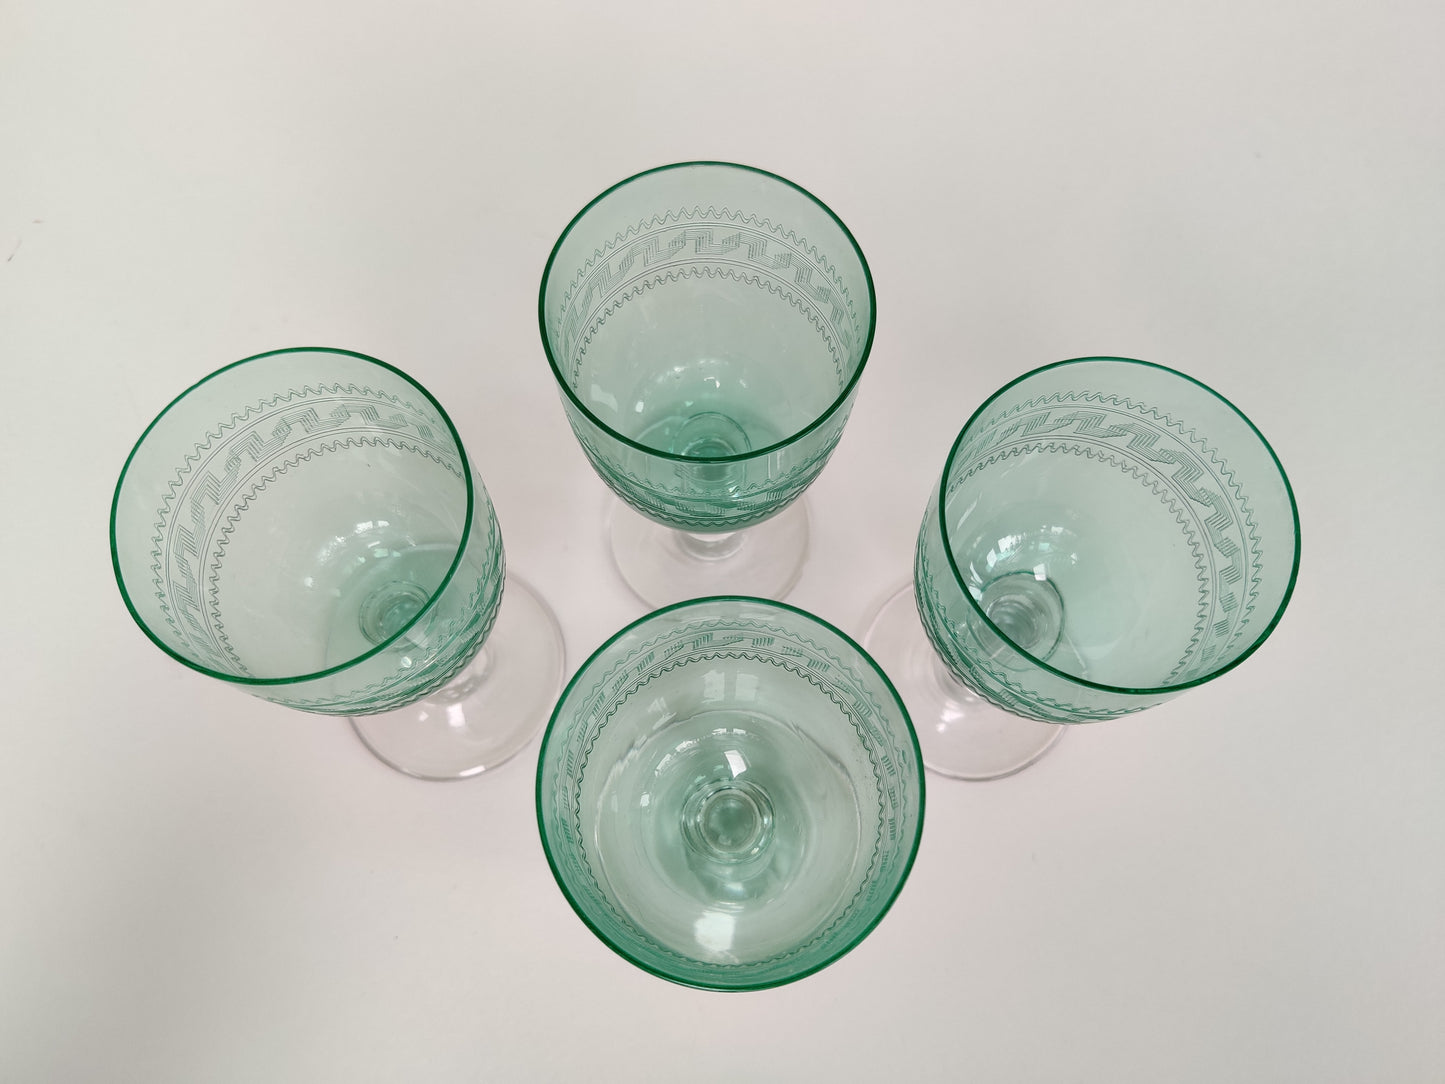 Four Vintage Drinks Glasses.